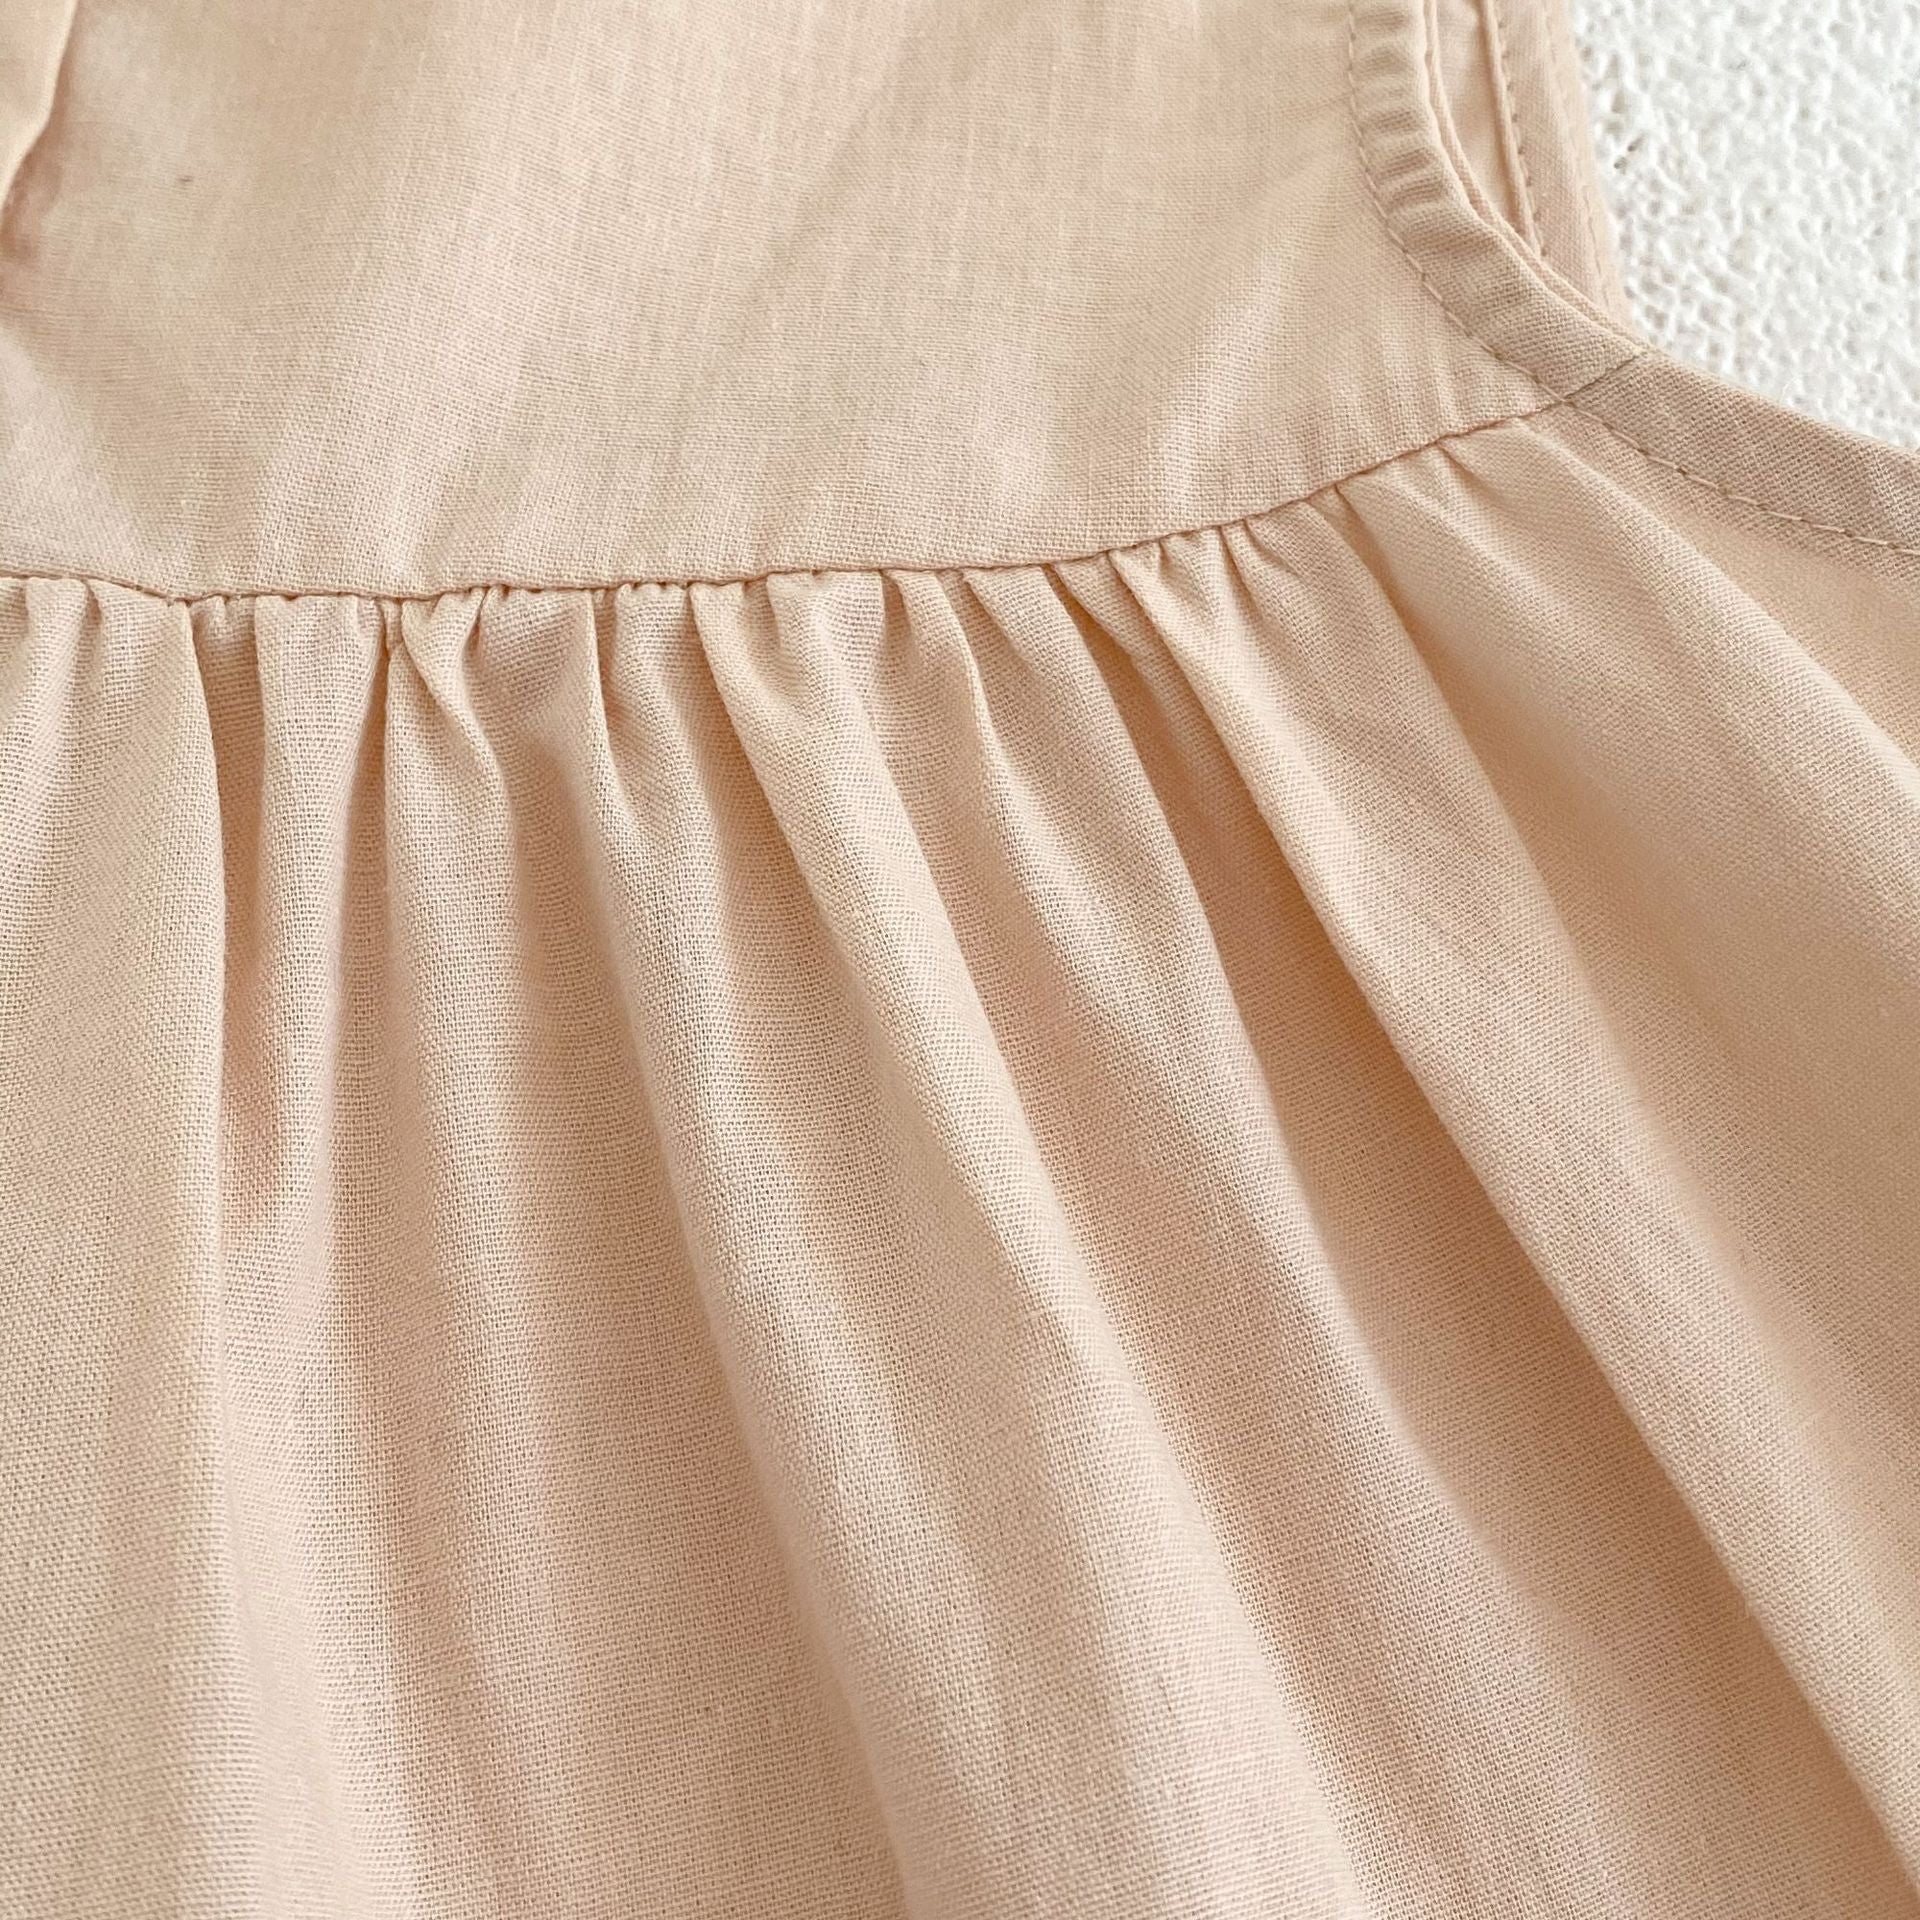 Apricot frill dress [N3092] 